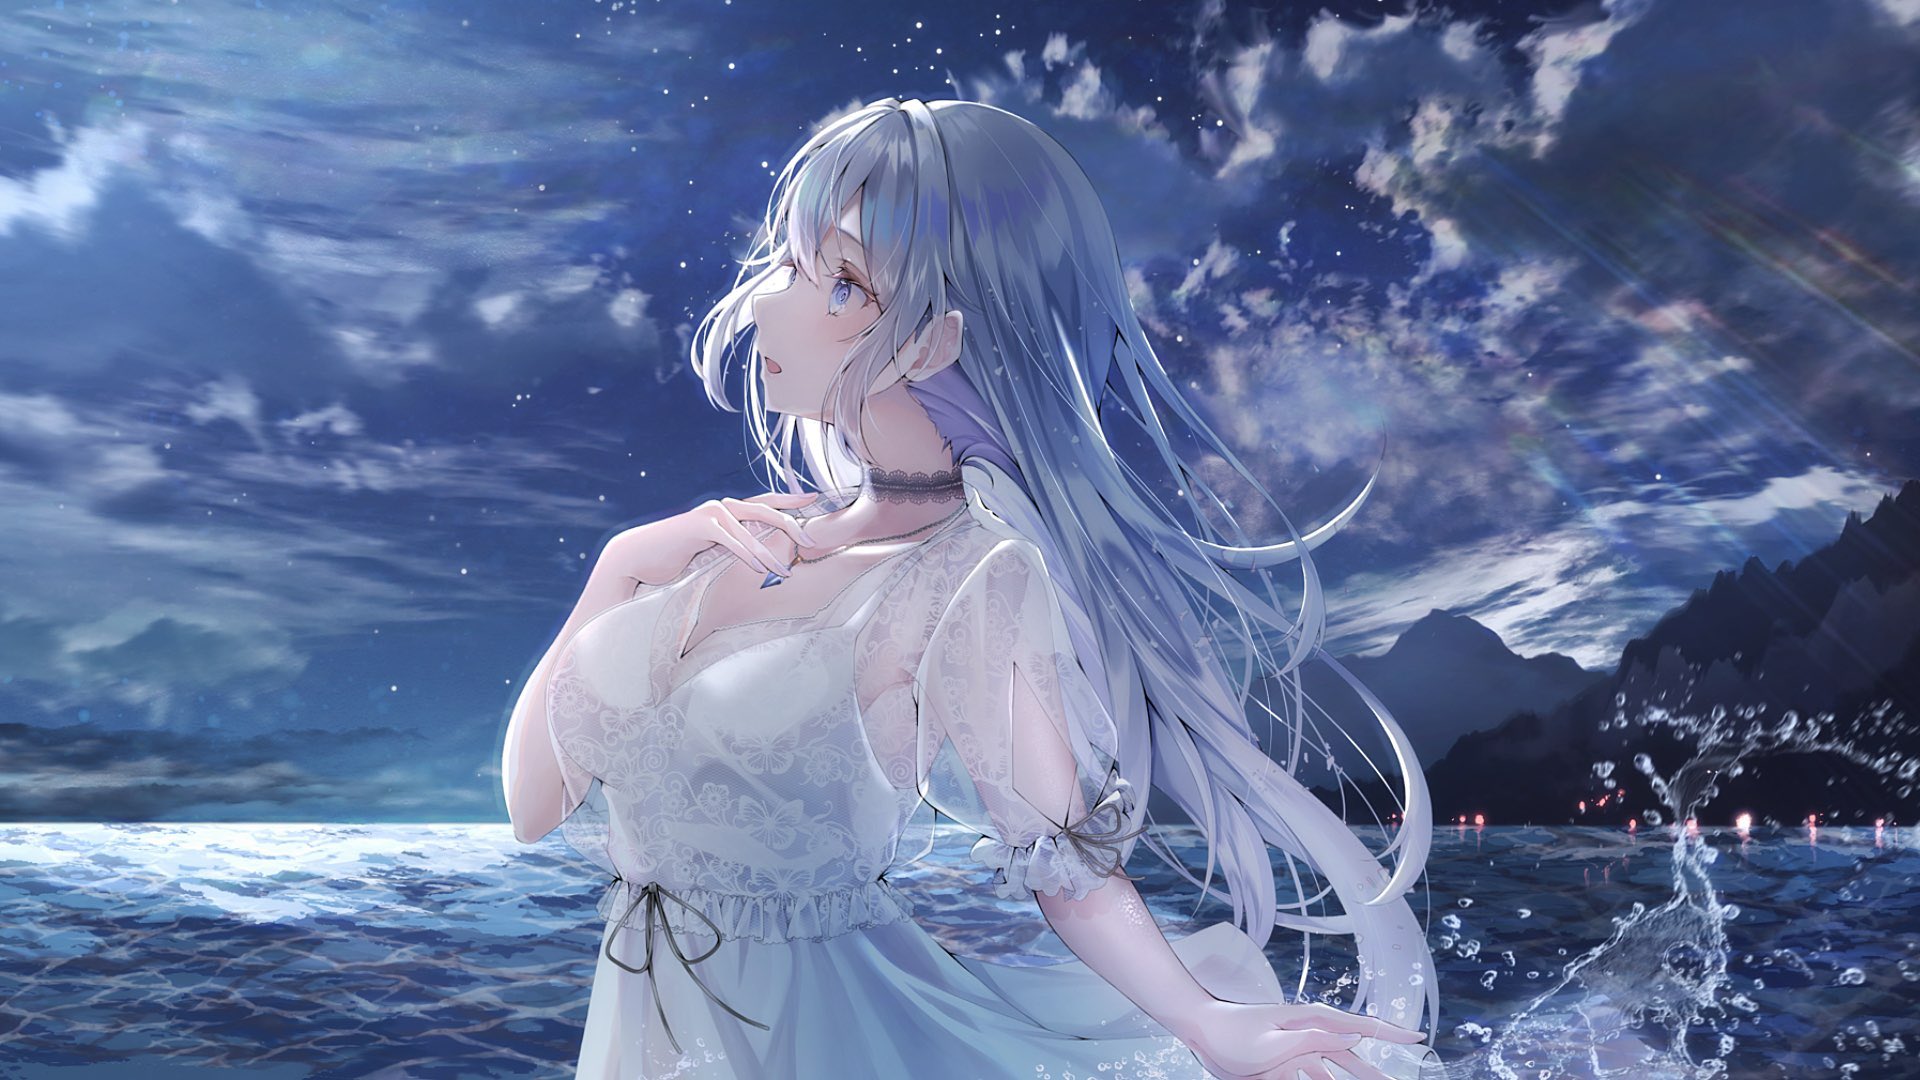 Kasakai Hikaru Long Hair Looking Up White Dress Women Outdoors Clouds Water Aoi Sui Virtual Youtuber 1920x1080